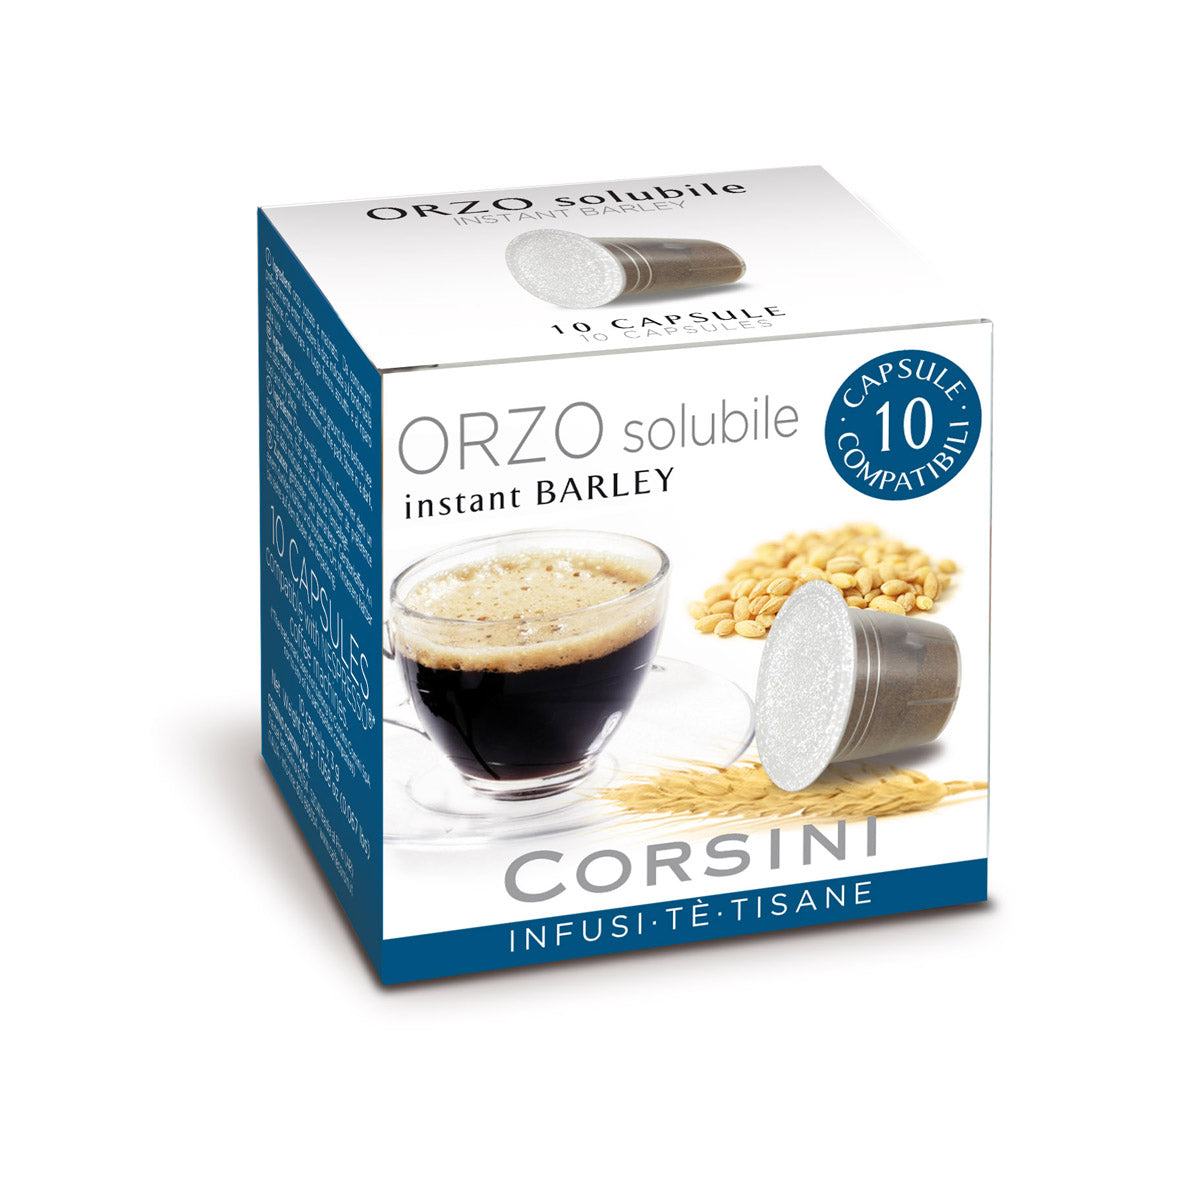 10 capsule di caffè d'orzo compatibili Nespresso® | Orzo solubile | Cartone con 12 confezioni